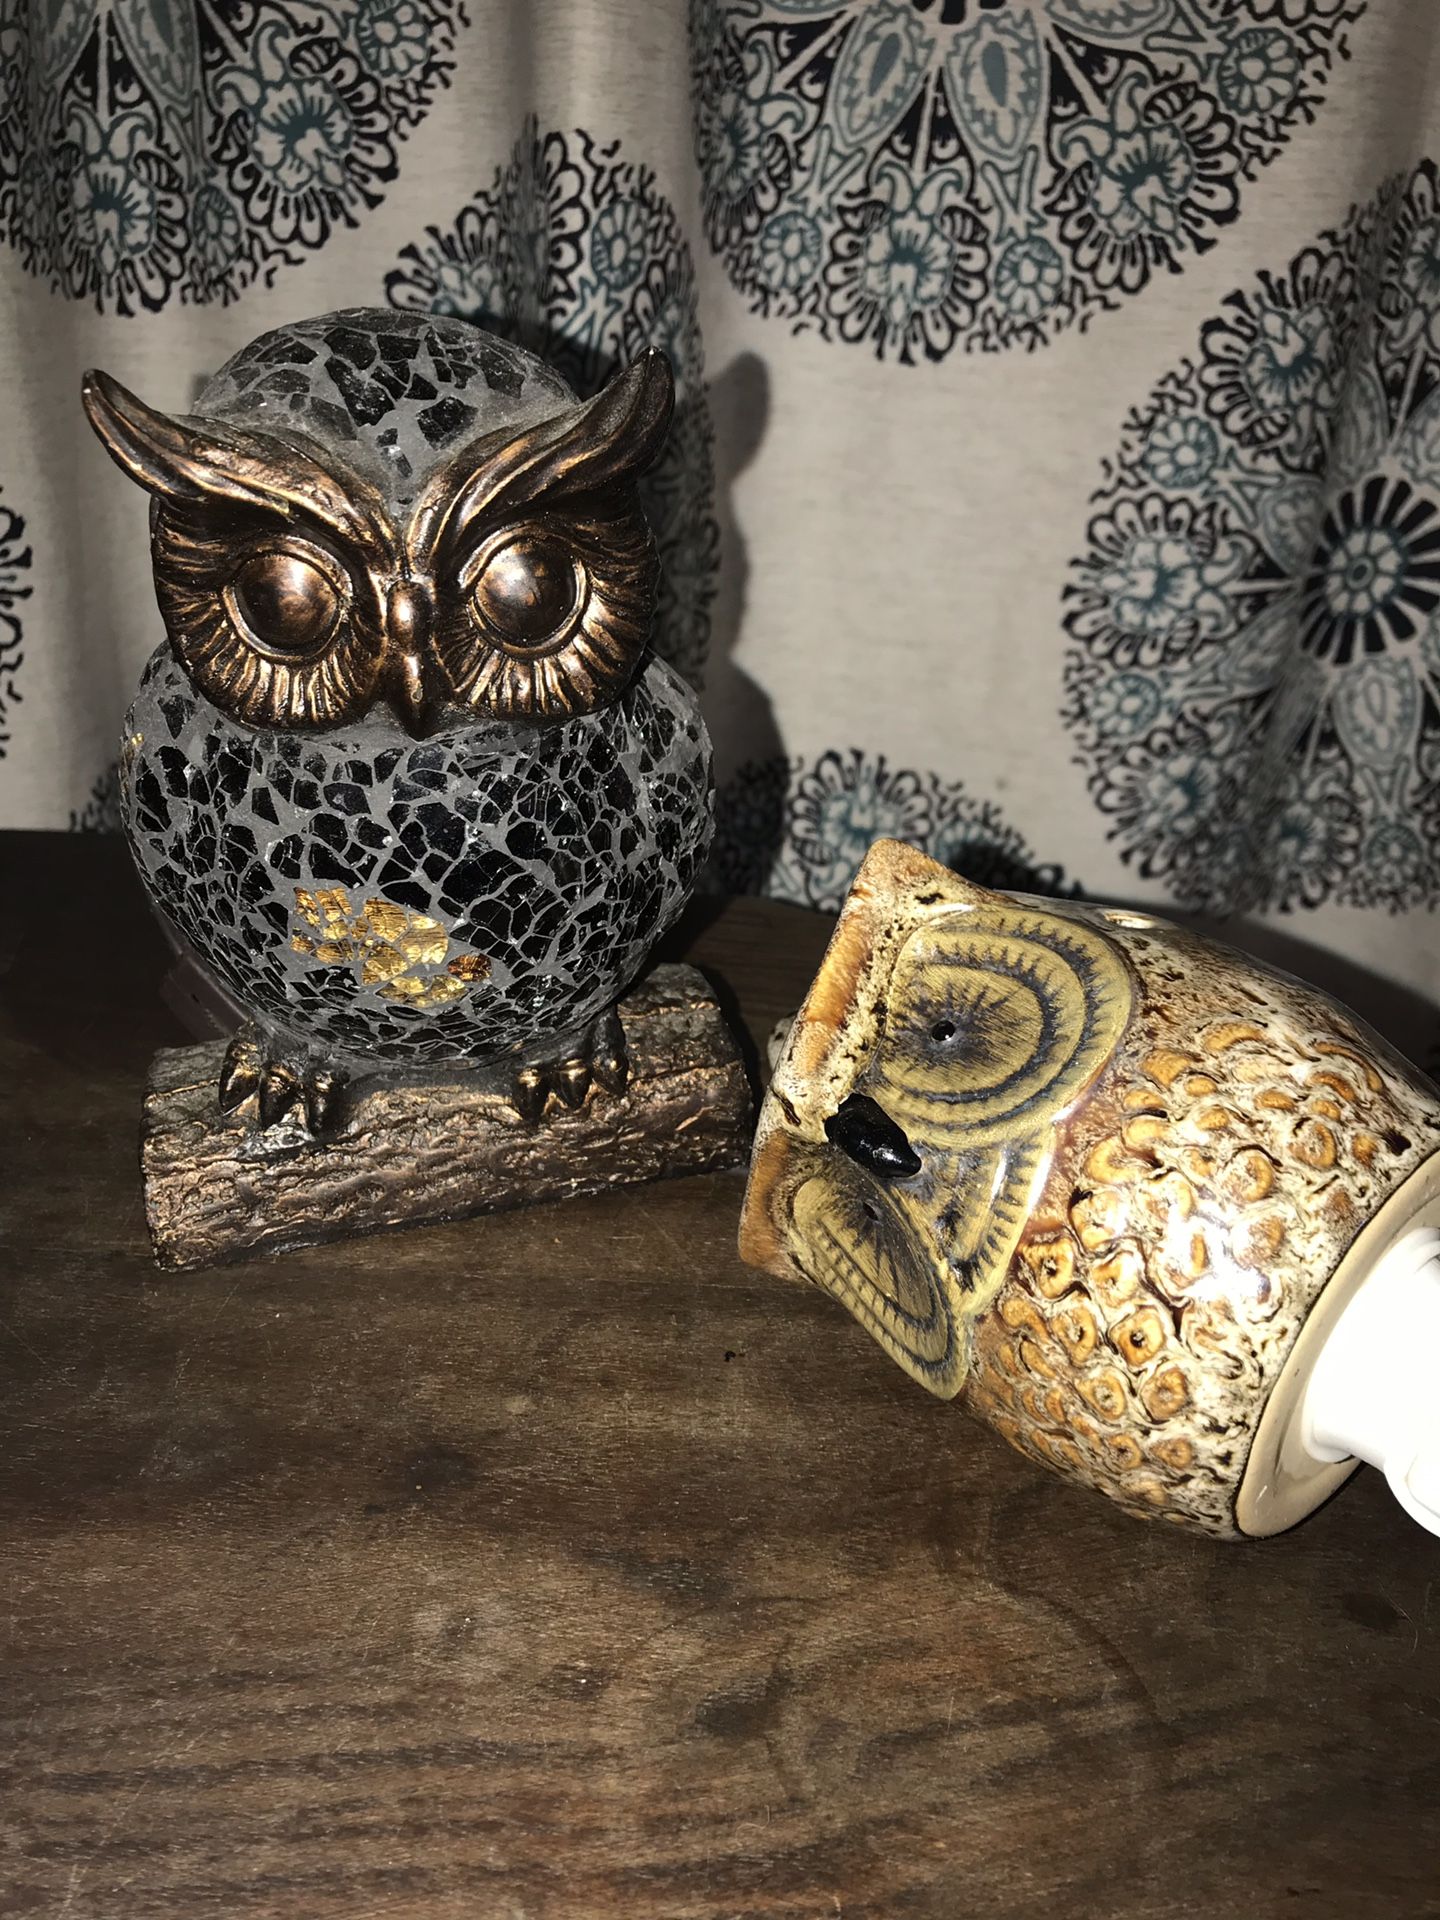 Owl lamp and incense burner